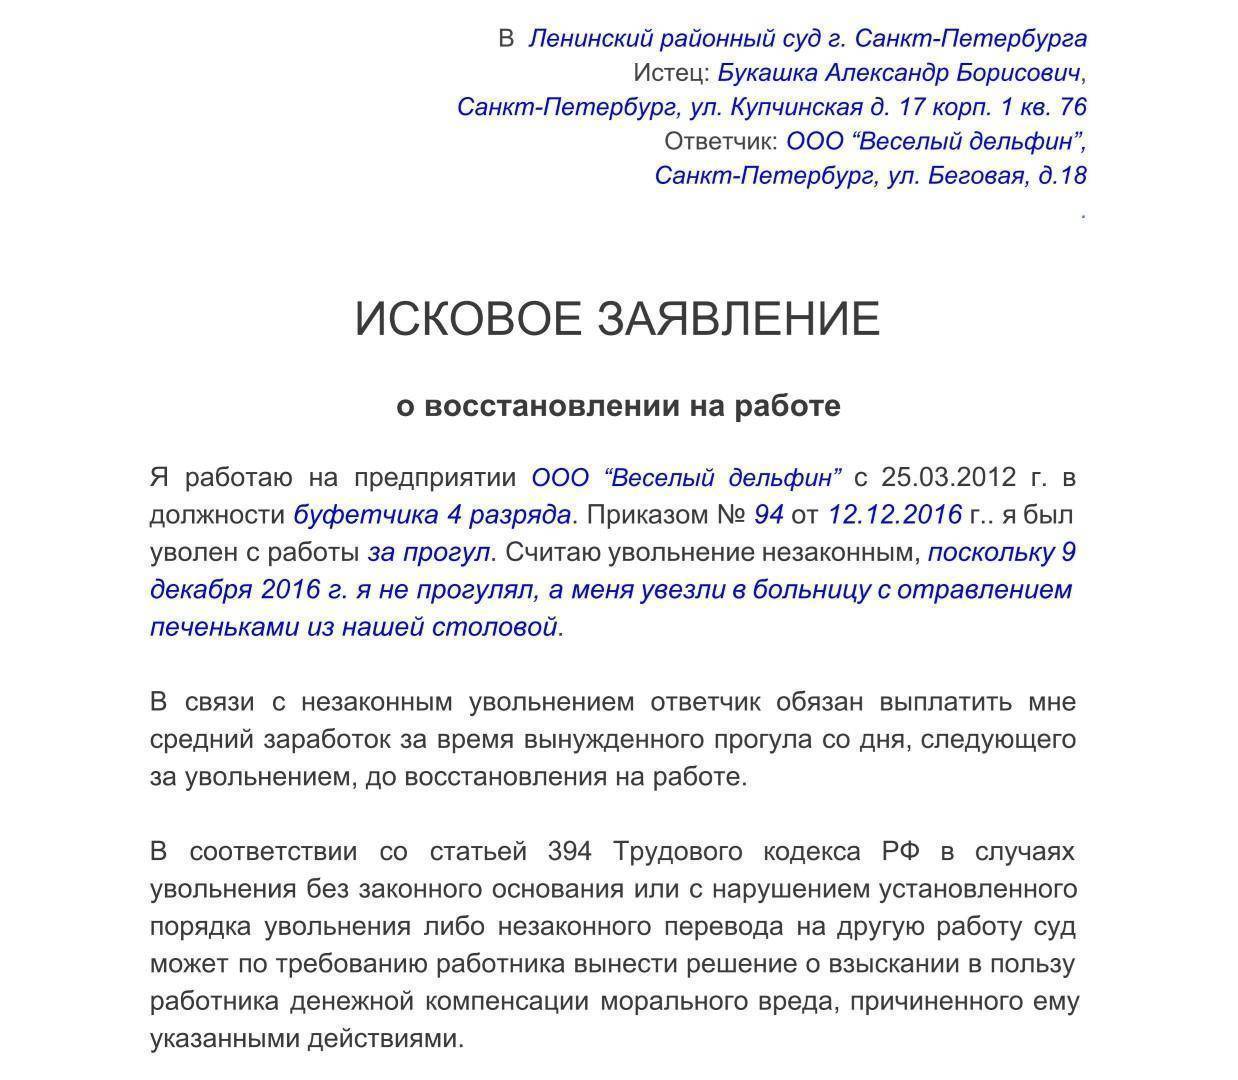 Срок восстановления на работе при незаконном увольнении | bankhys.ru - банки, бизнес и экономика для всех.